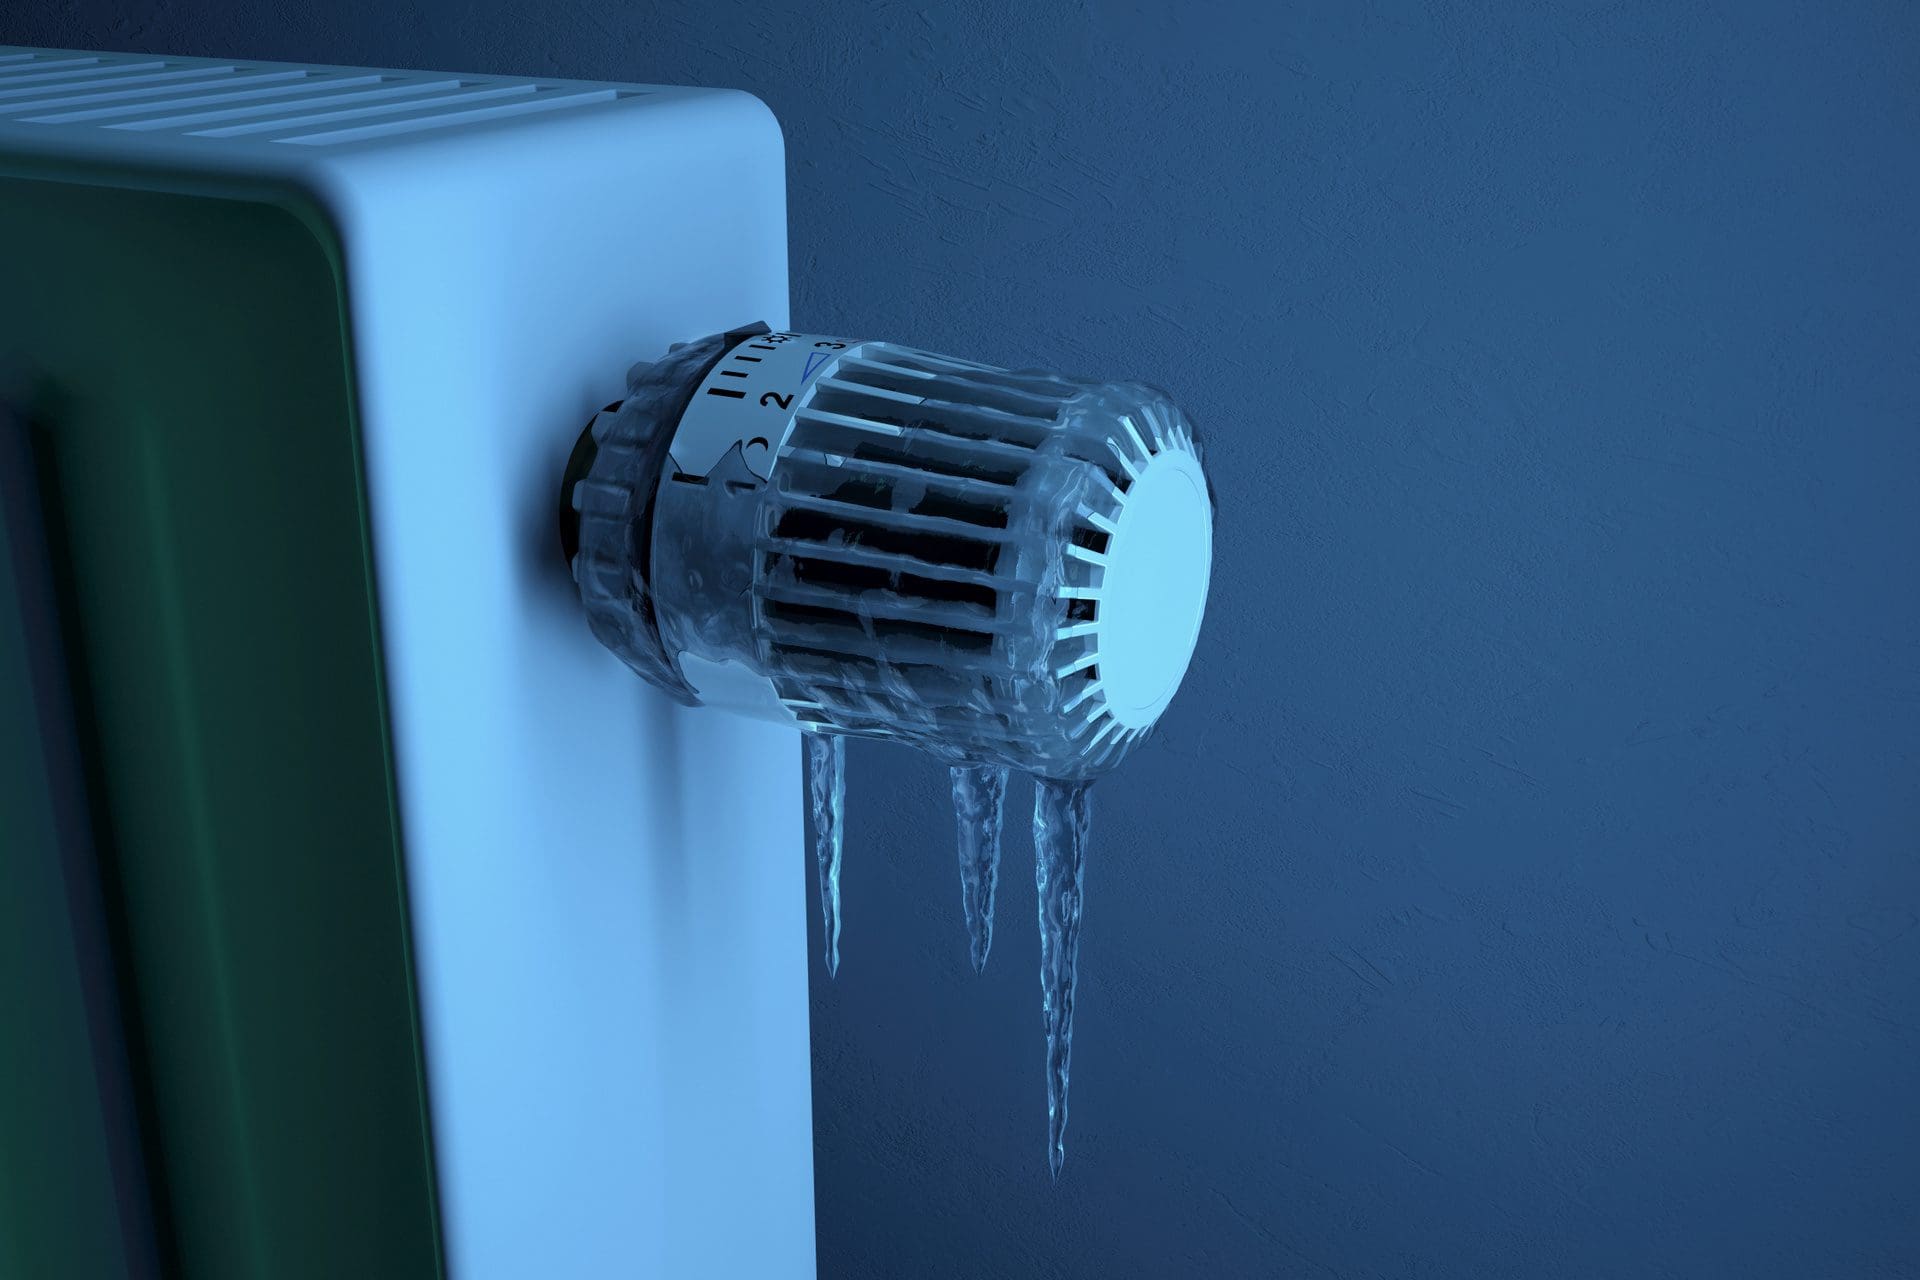 Heizung eingefroren / Eingefrorenes Thermostat: Frieren die Heizungsleitungen im Haus ein, ist der Wasserschaden nicht mehr weit... (© lassedesignen / stock.adobe.com)